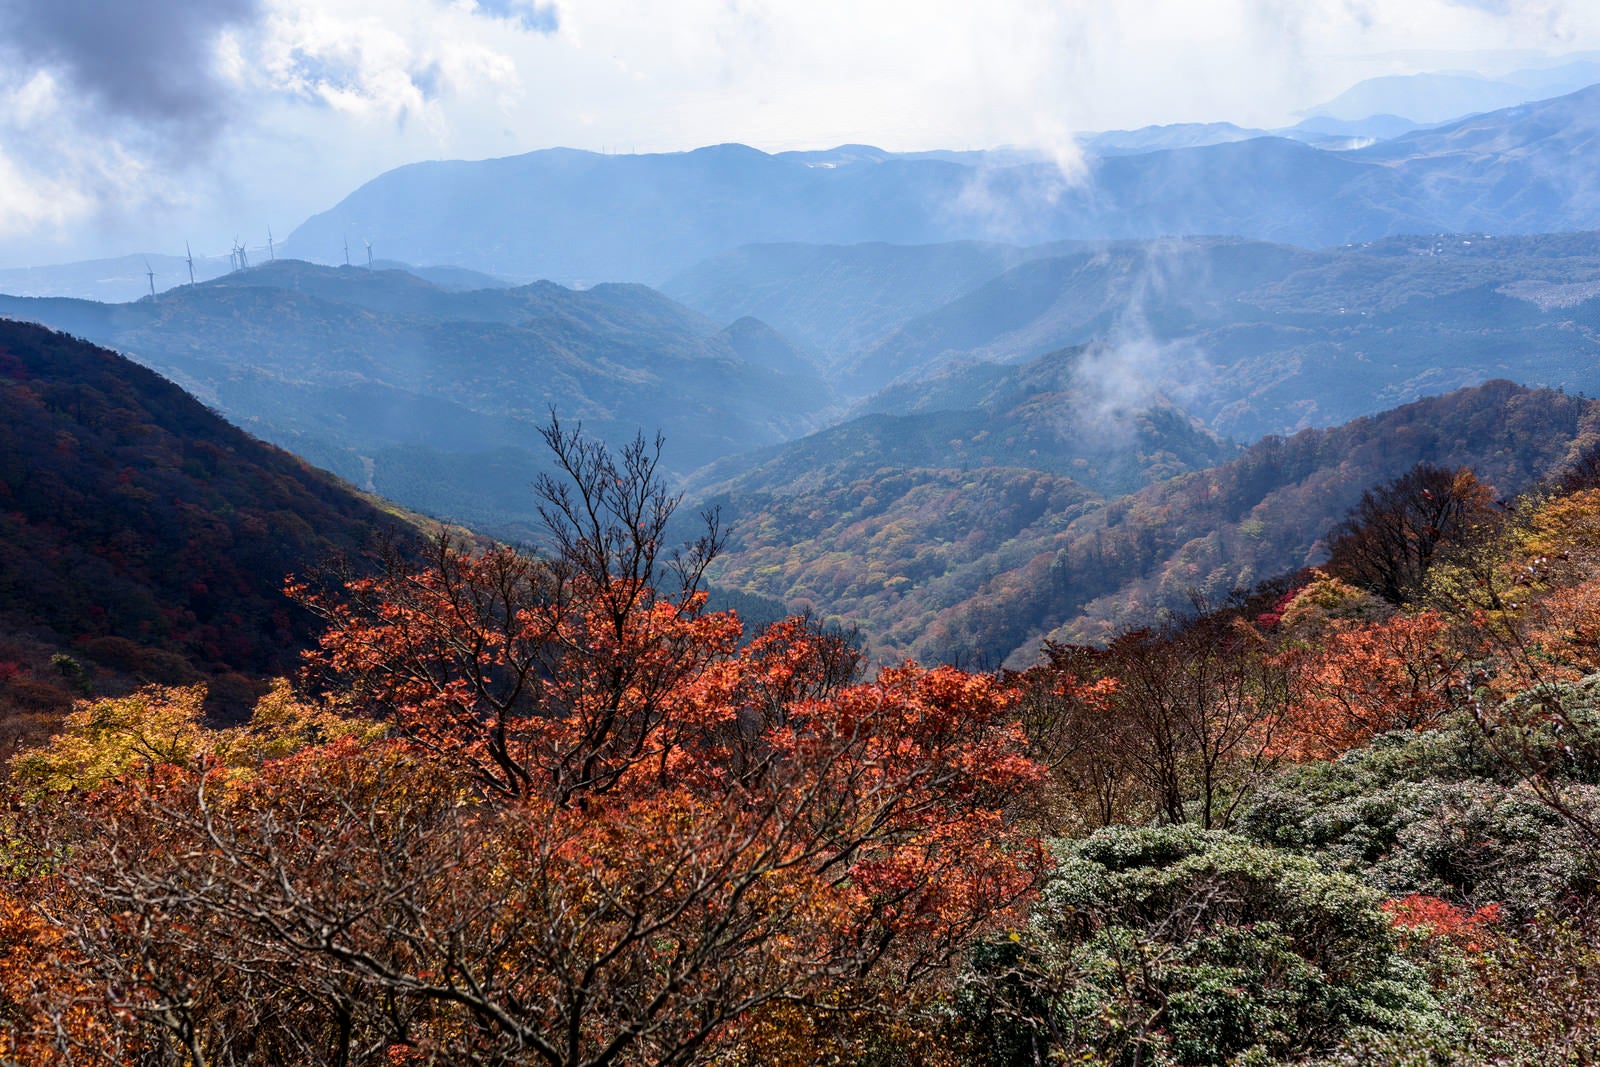 「天城山稜線から見る伊豆の山々」の写真